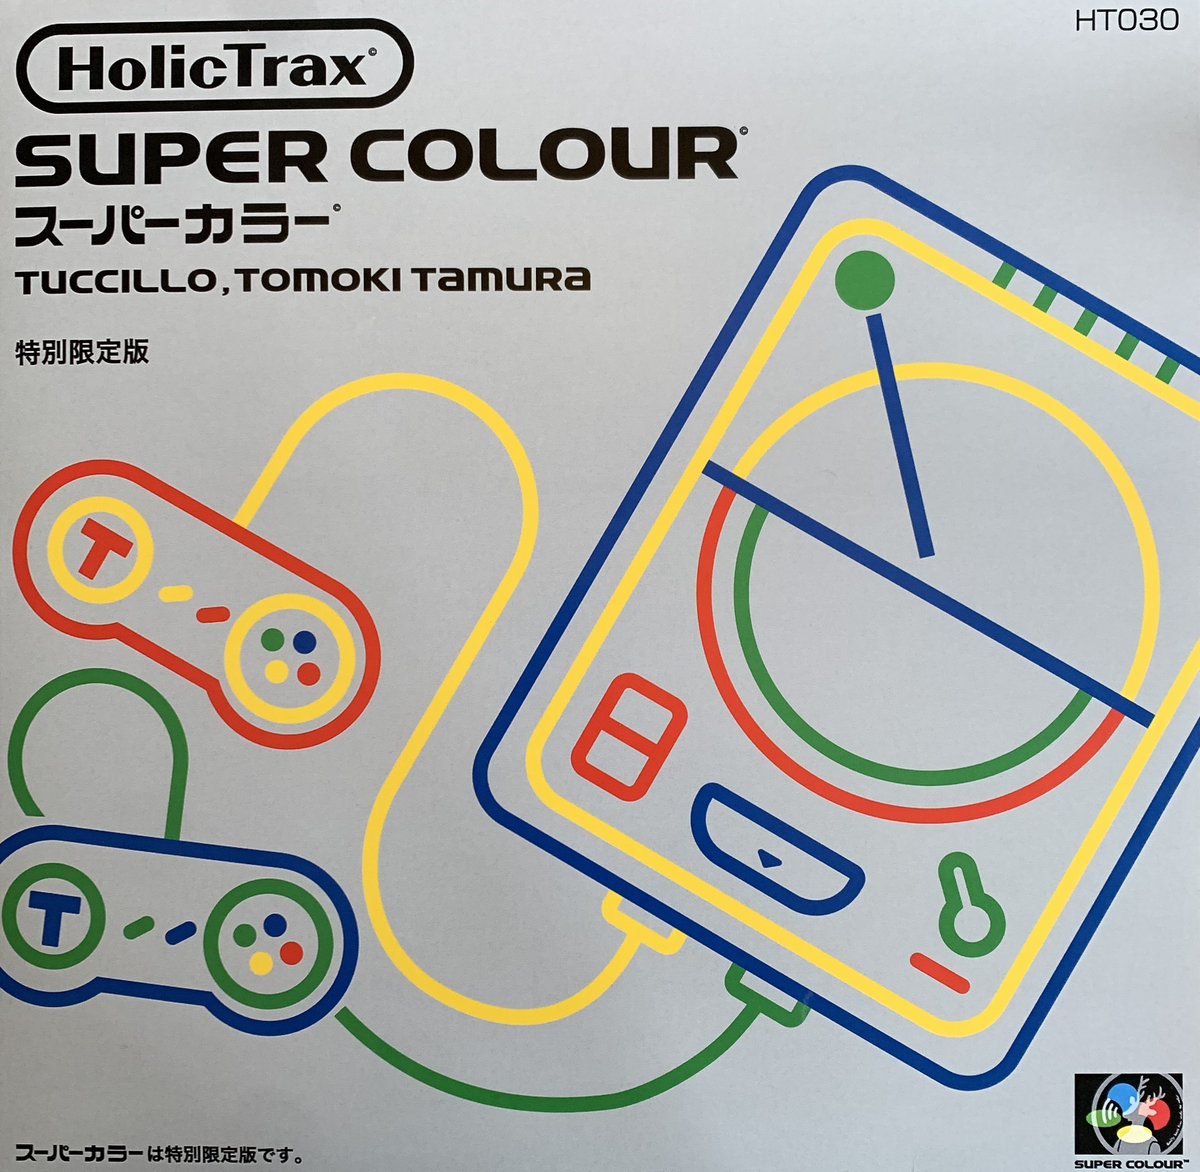 Super Colour by Tomoki Tamura & Tuccillo at ESHK Record Store Berlin